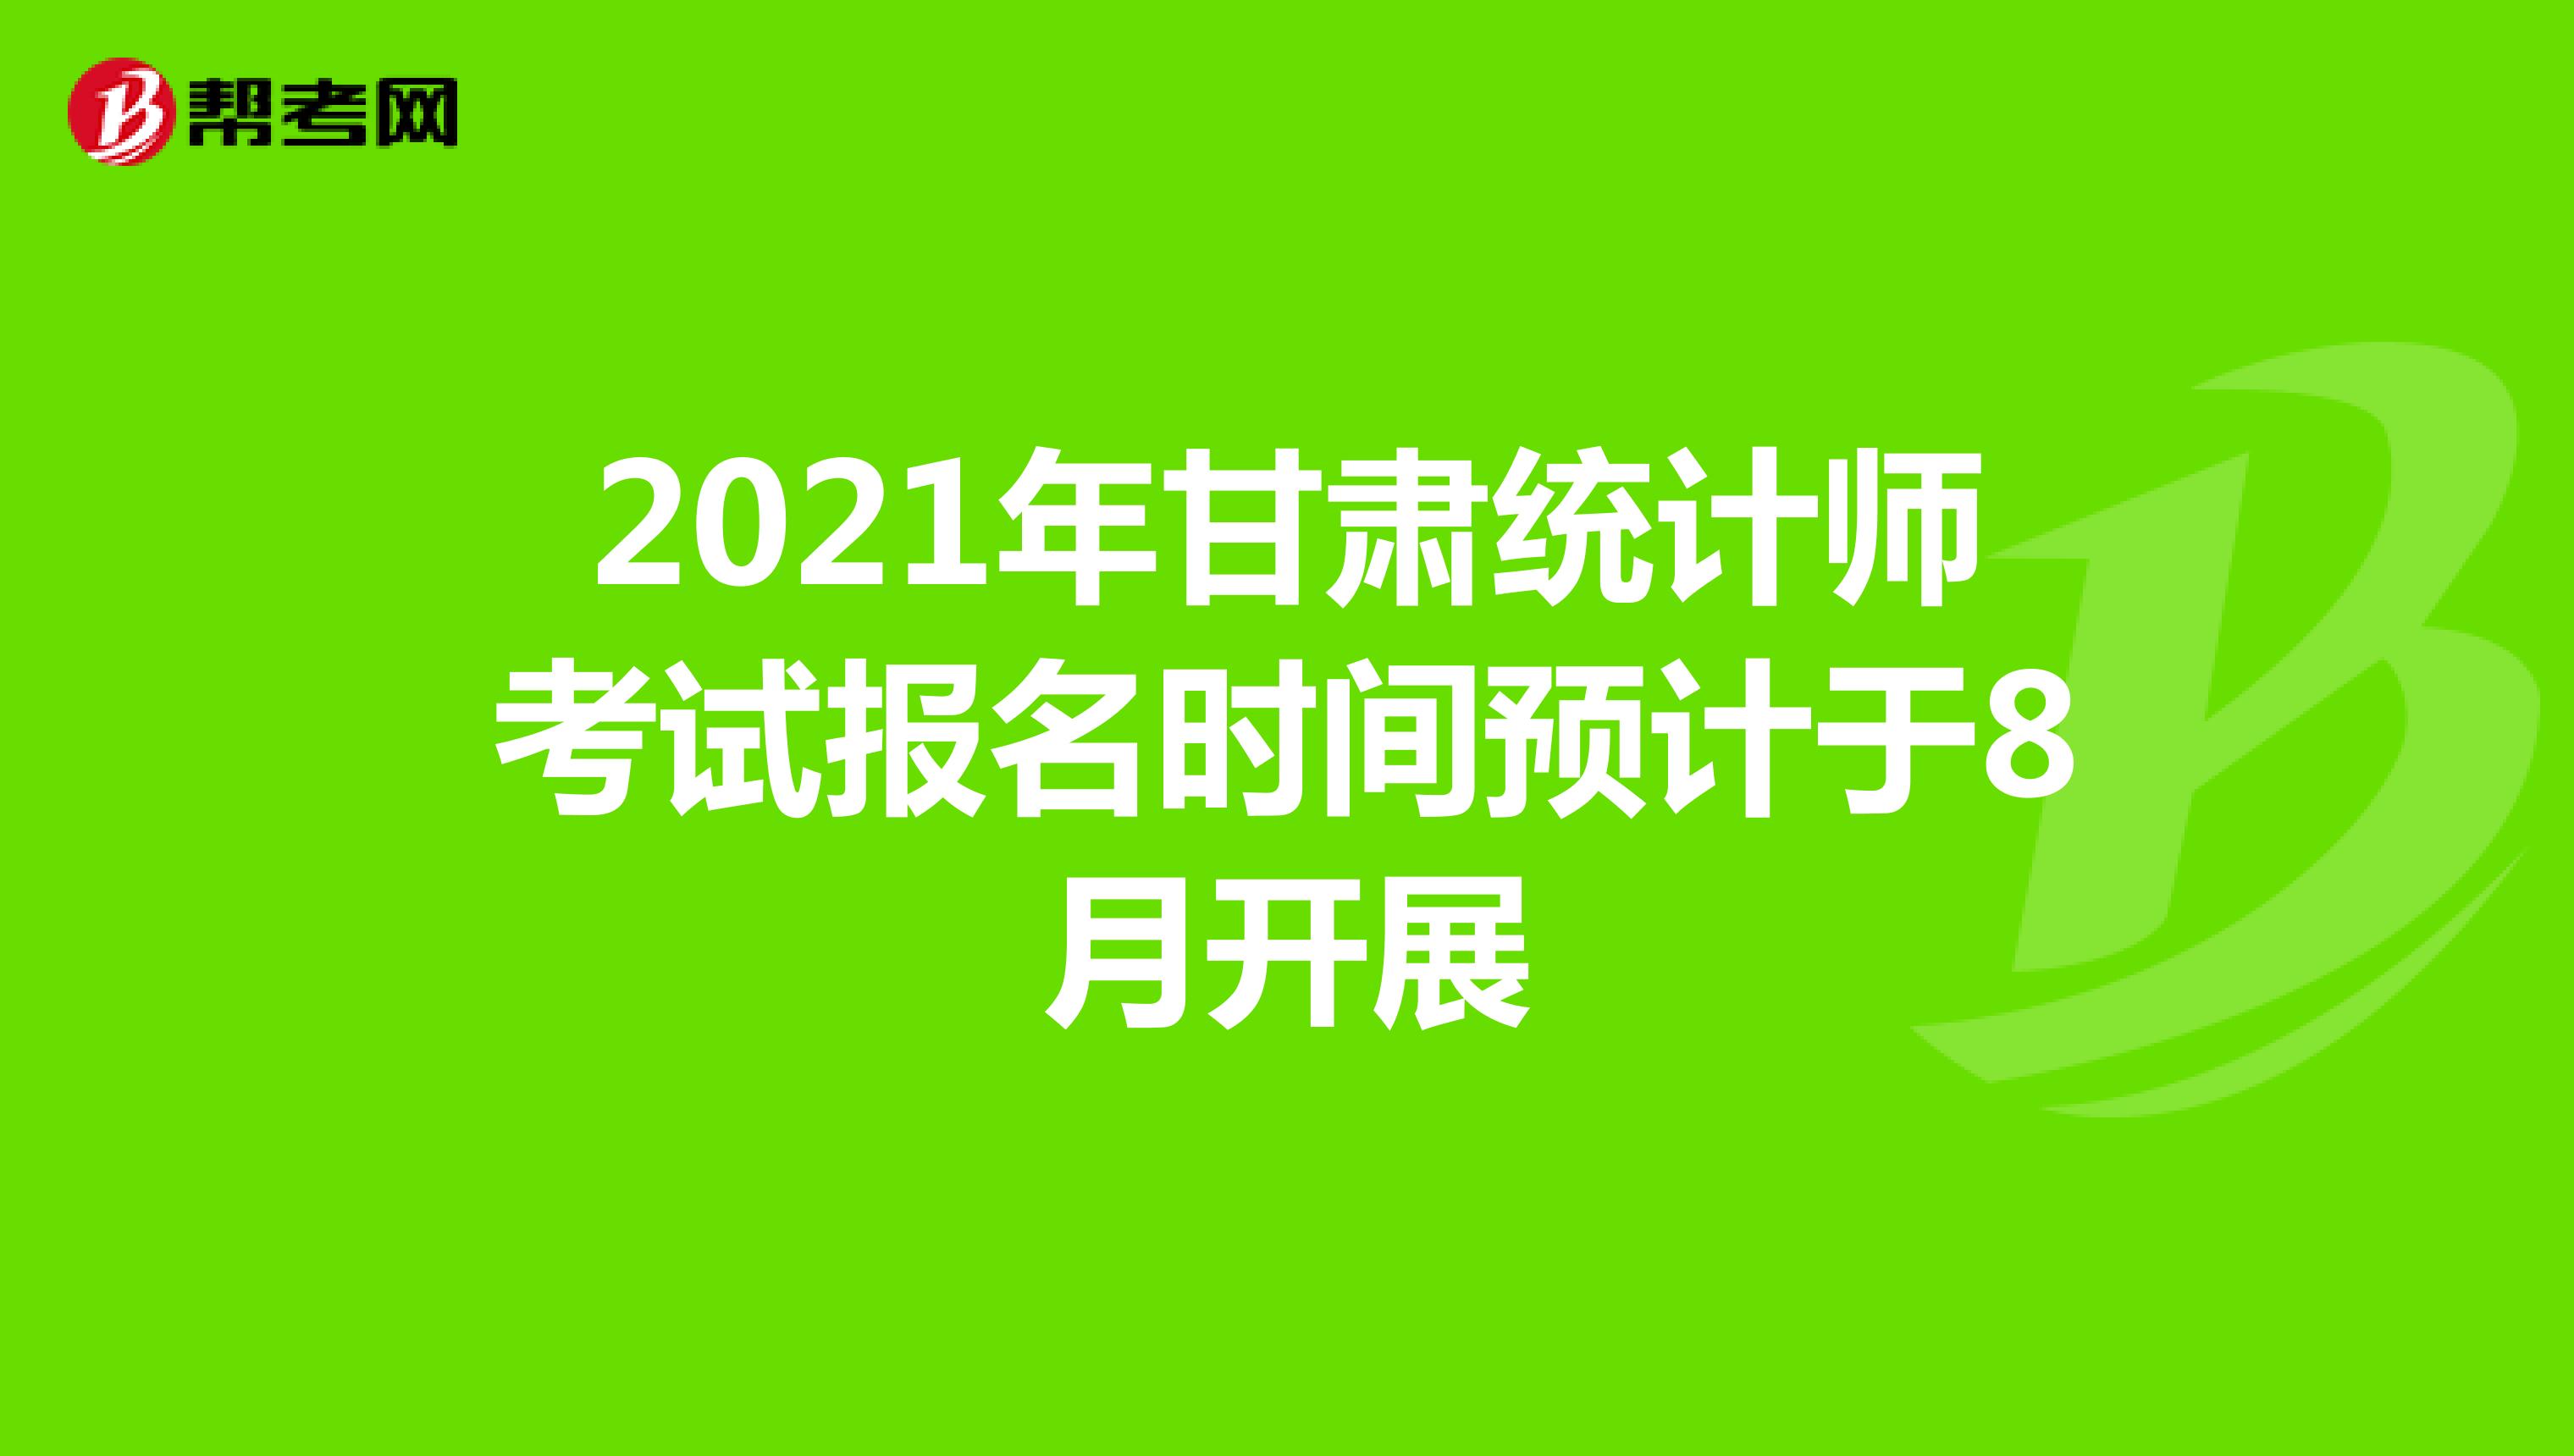 2021年甘肃统计师考试报名时间预计于8月开展